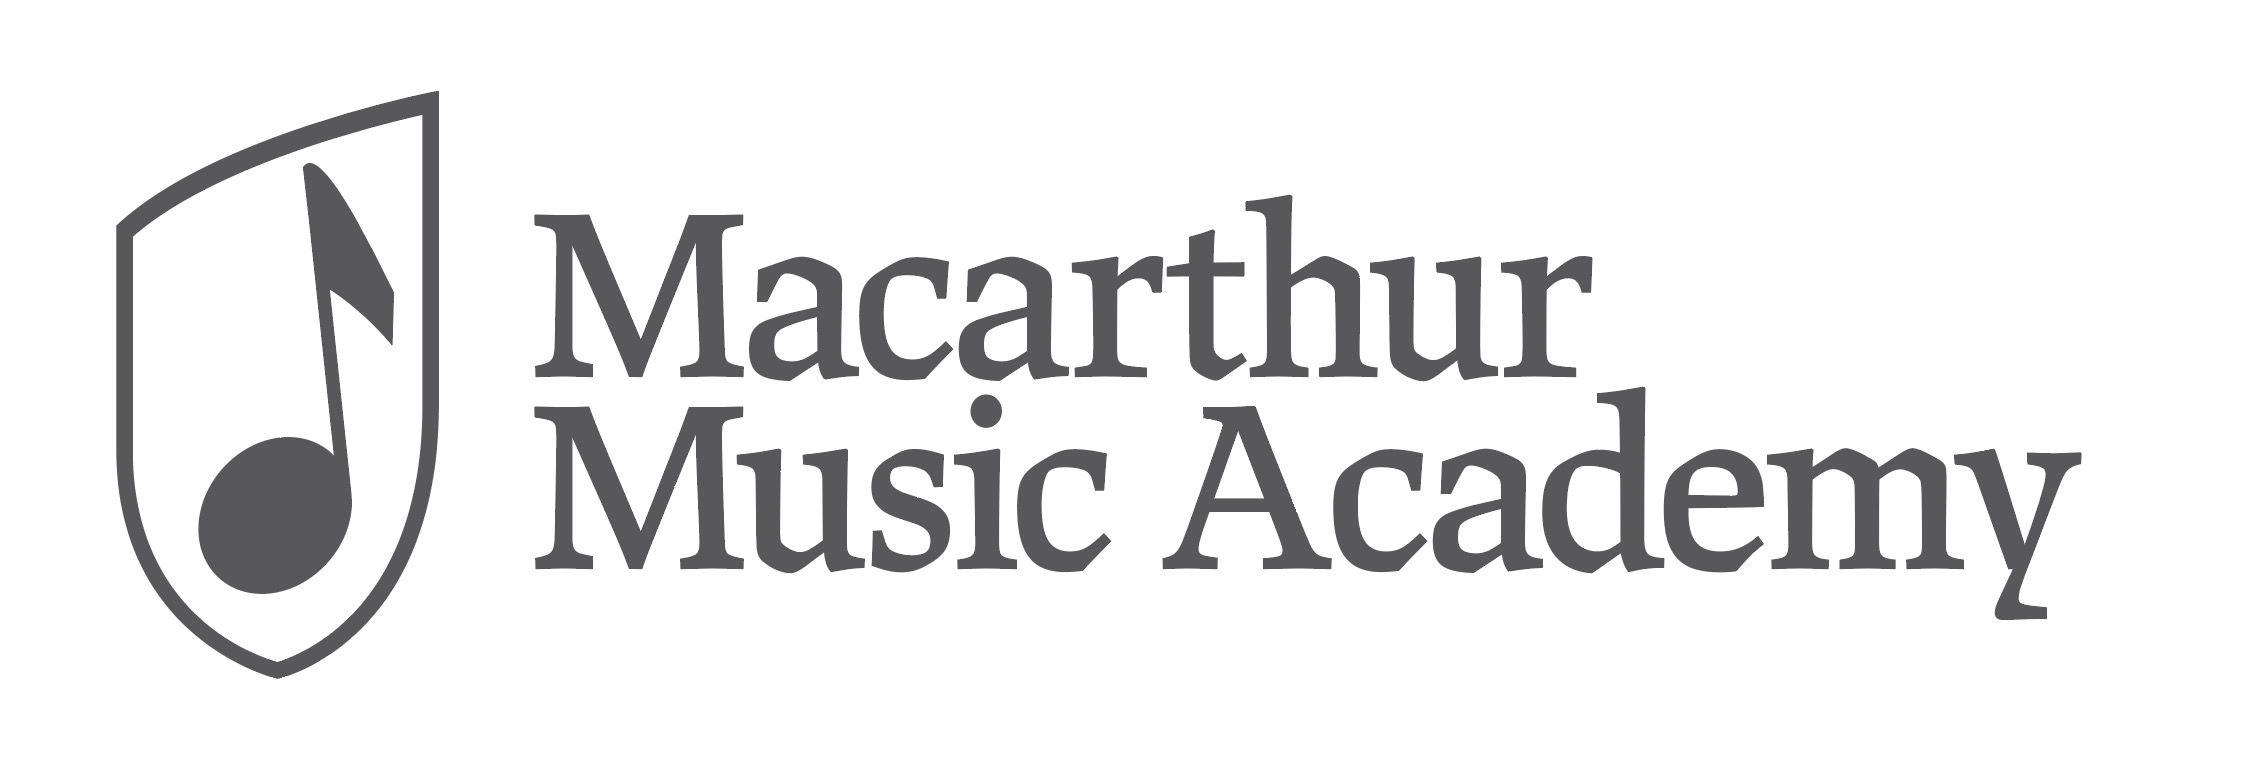 Macarthur Music Academy